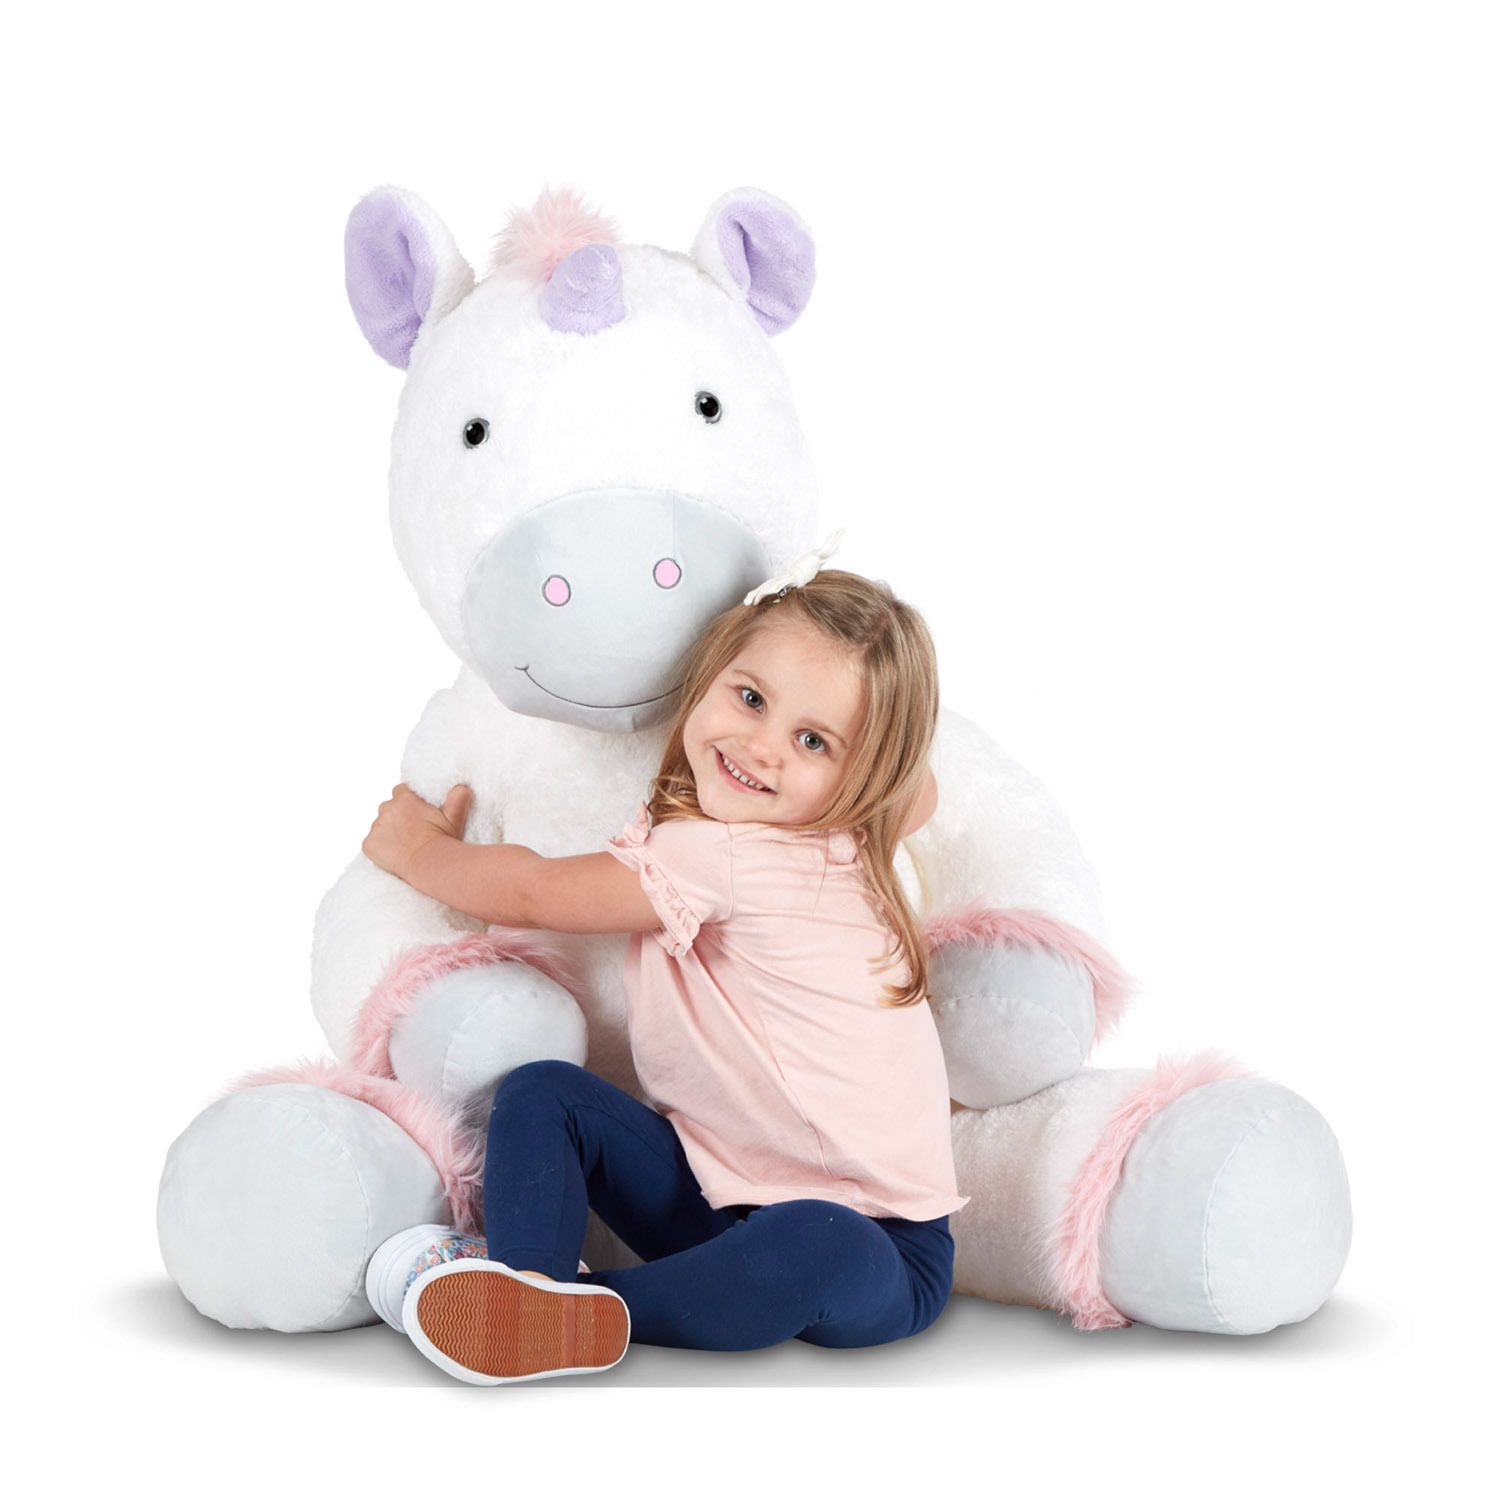 giant stuffed unicorn